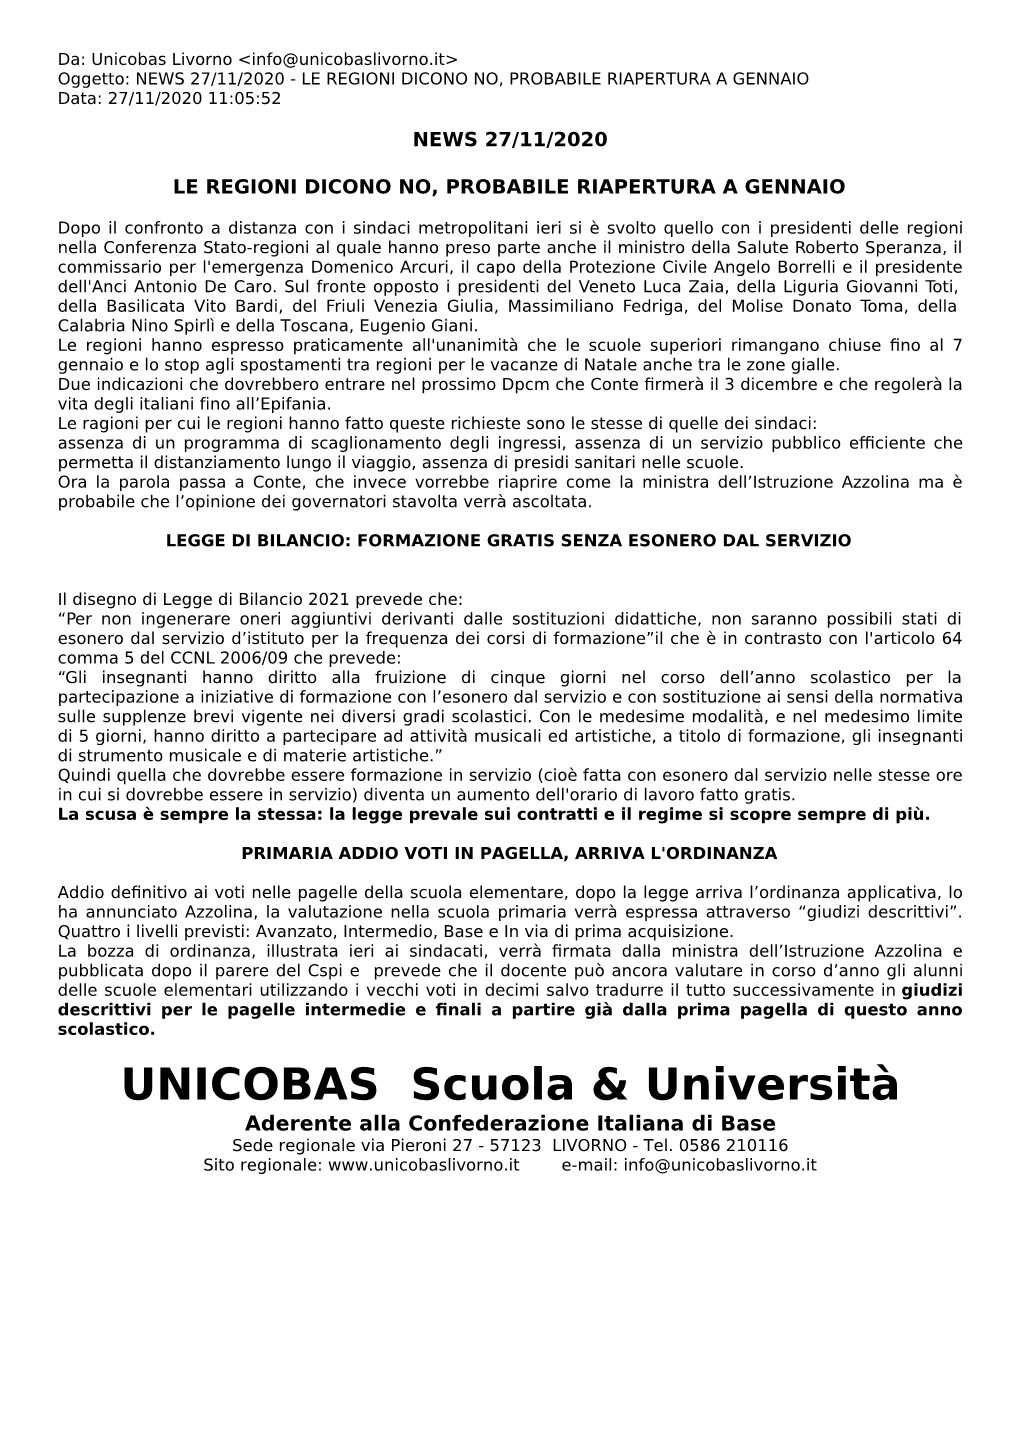 UNICOBAS Scuola & Università